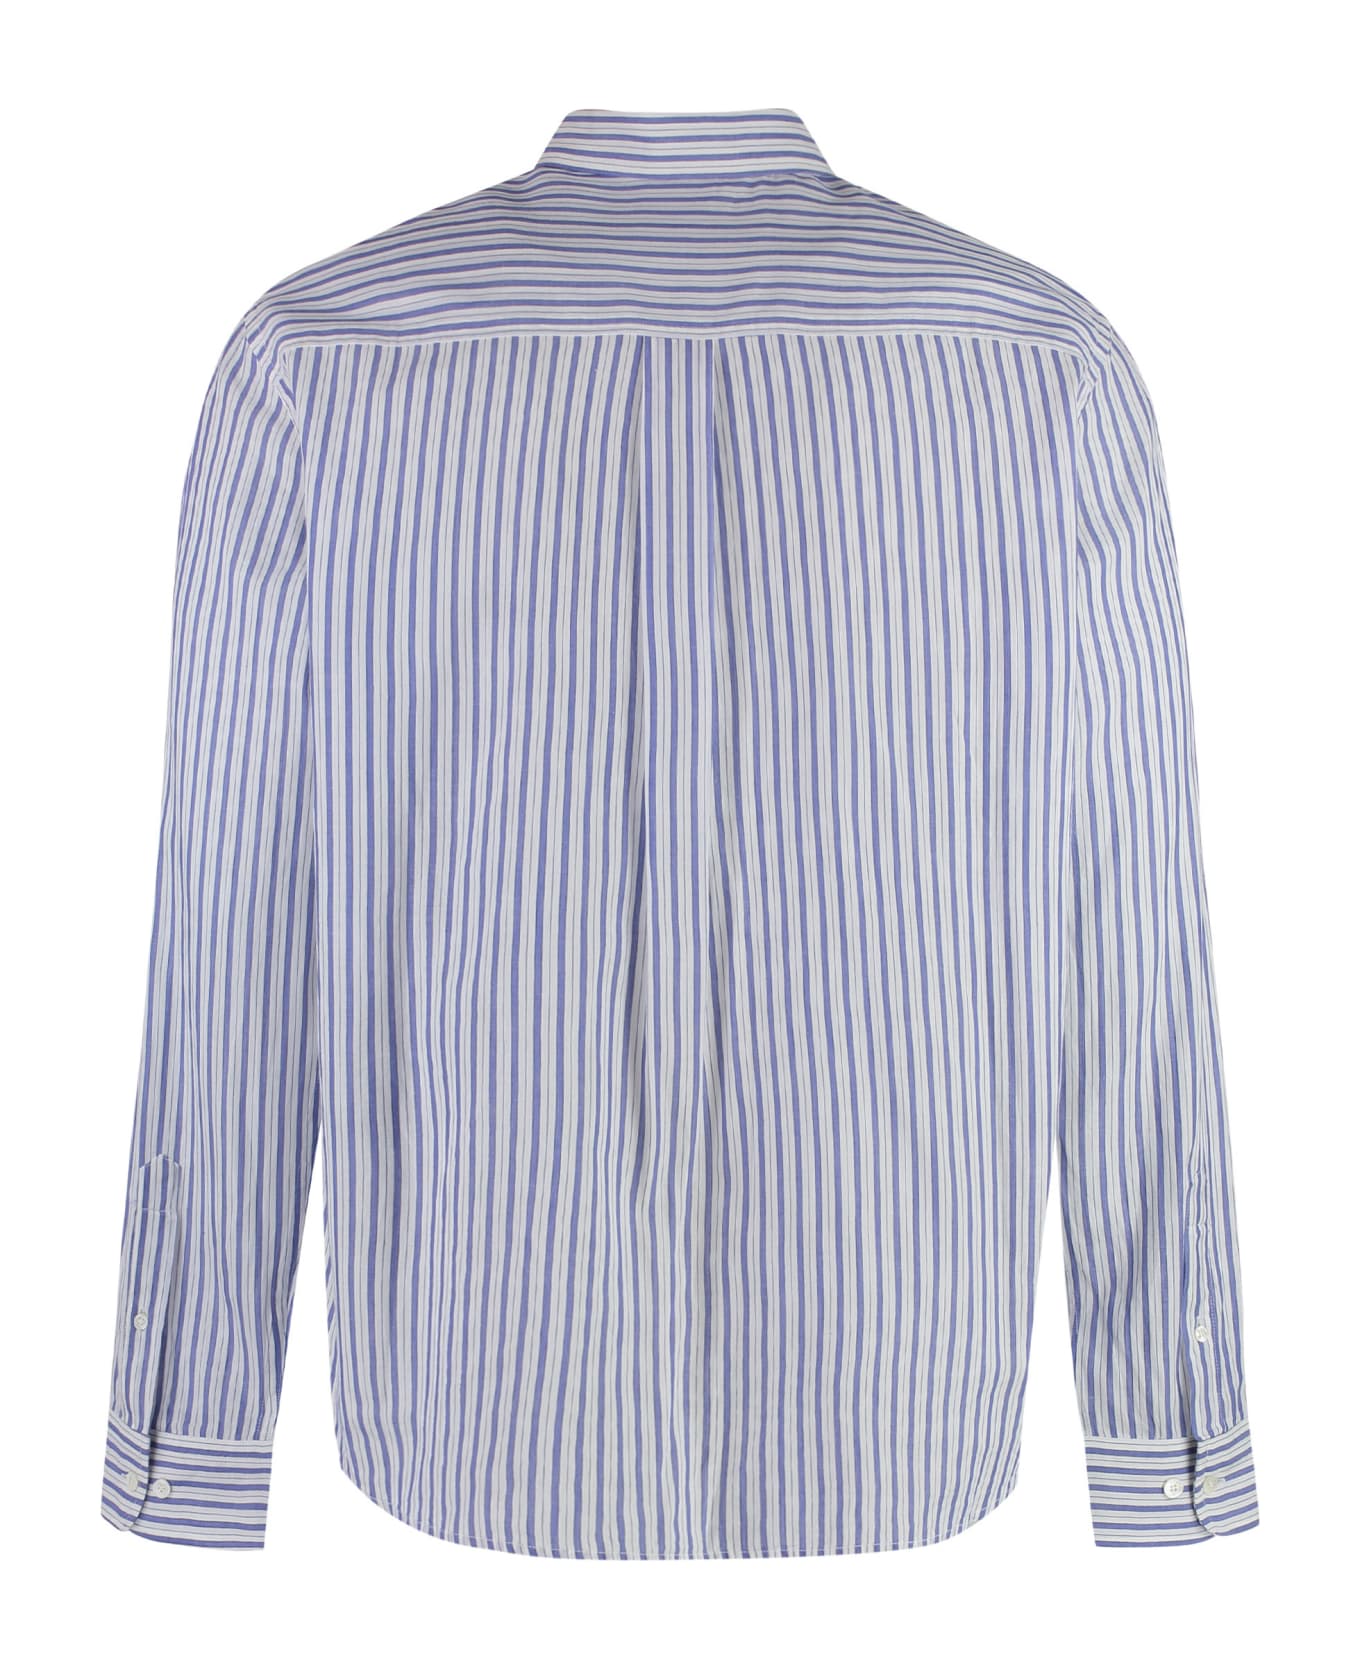 Isabel Marant Jasolo Striped Cotton Shirt - White シャツ